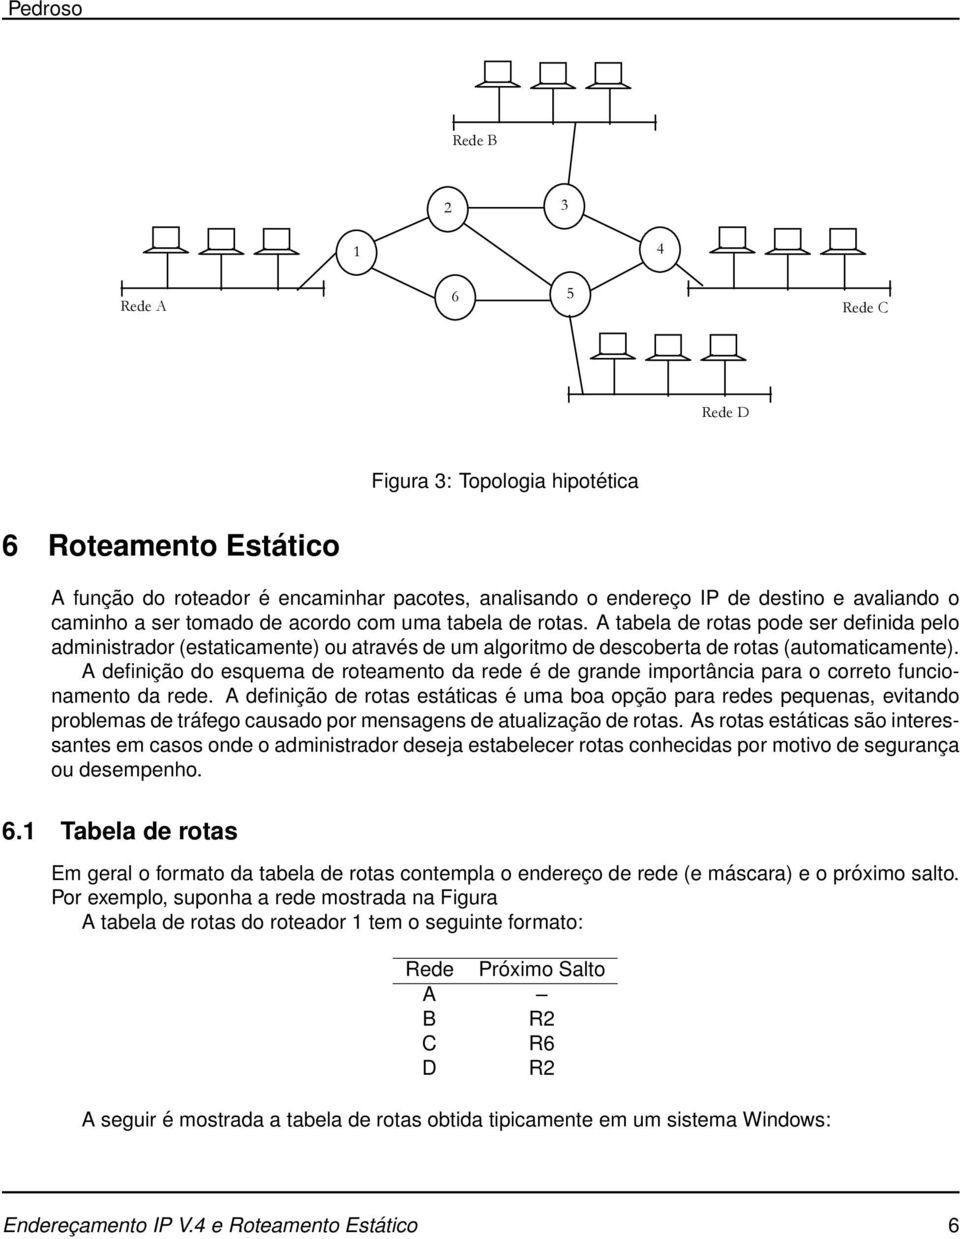 Por exemplo, temos a rede abaixo: Rede B 2 3 1 4 Rede A 6 5 Rede C Rede D Tabela de rotas do roteador 1: Figura 3: Topologia hipotética Rede 6 Roteamento Estático Próximo salto A --- A função do